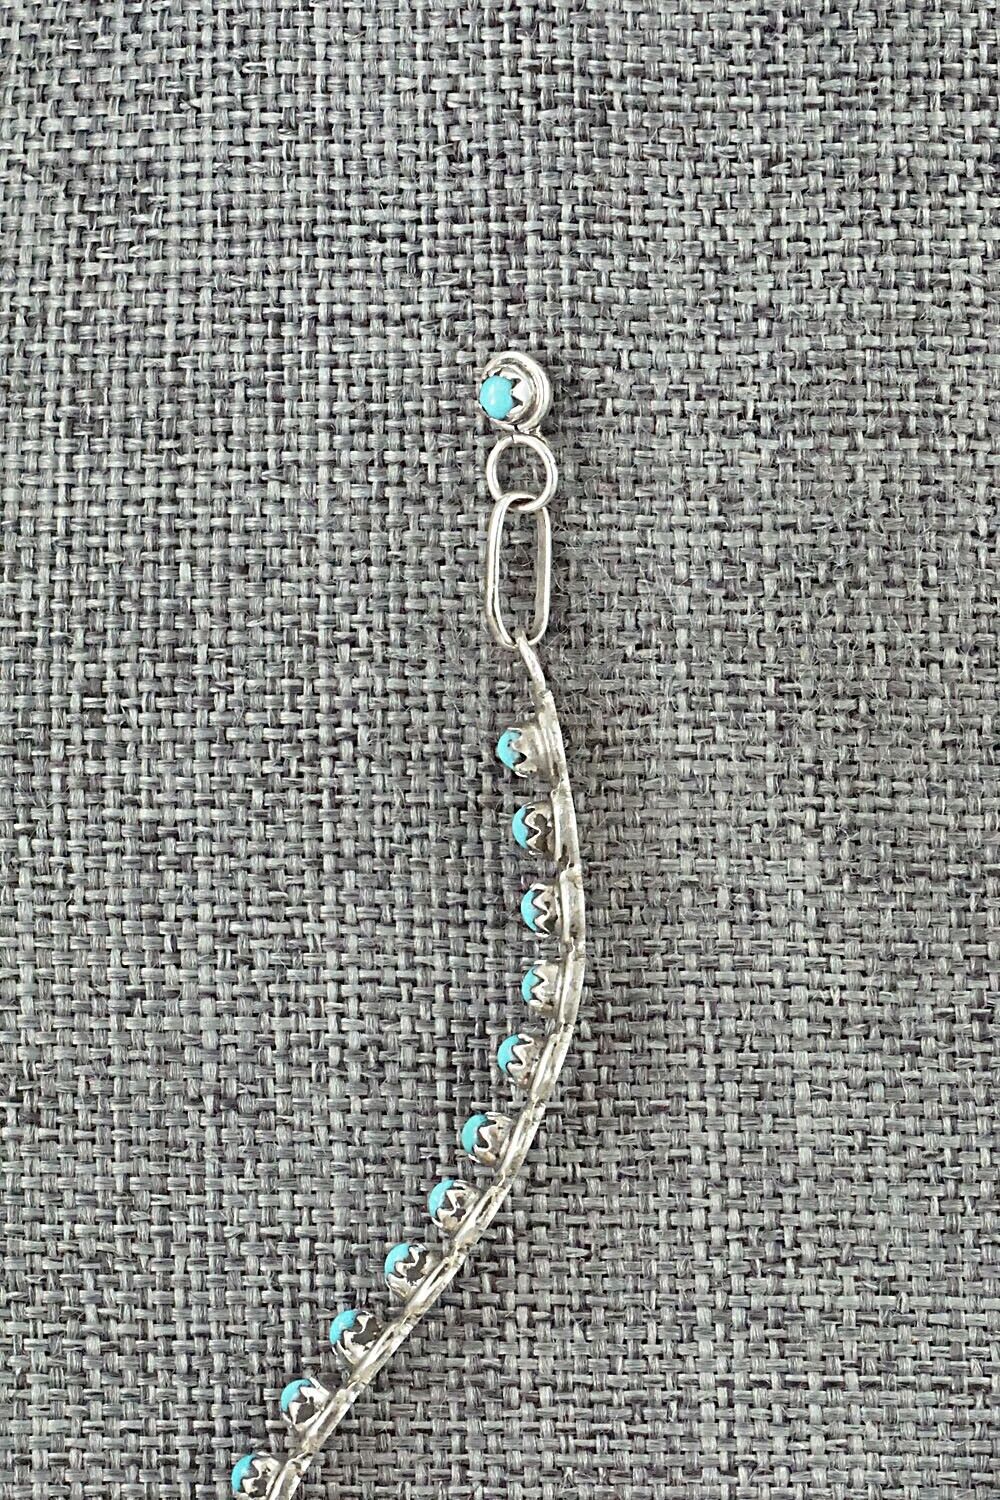 Turquoise & Sterling Silver Earrings - Henrietta Quetawki